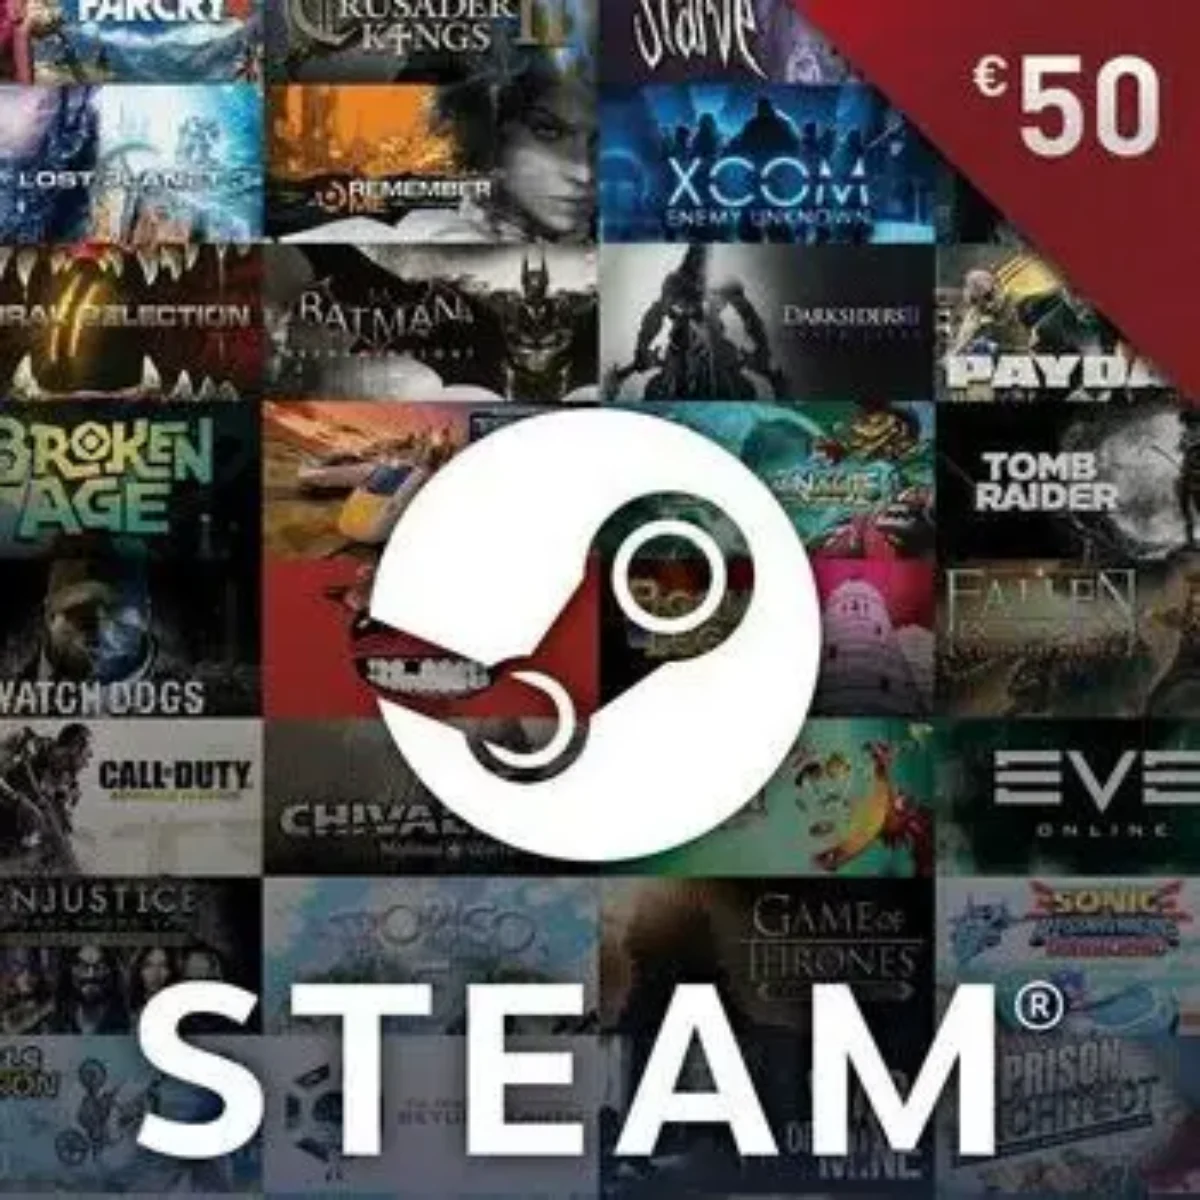 Acheter carte steam 20€ sur Codeplay Maroc ✓ Code Steam Maroc